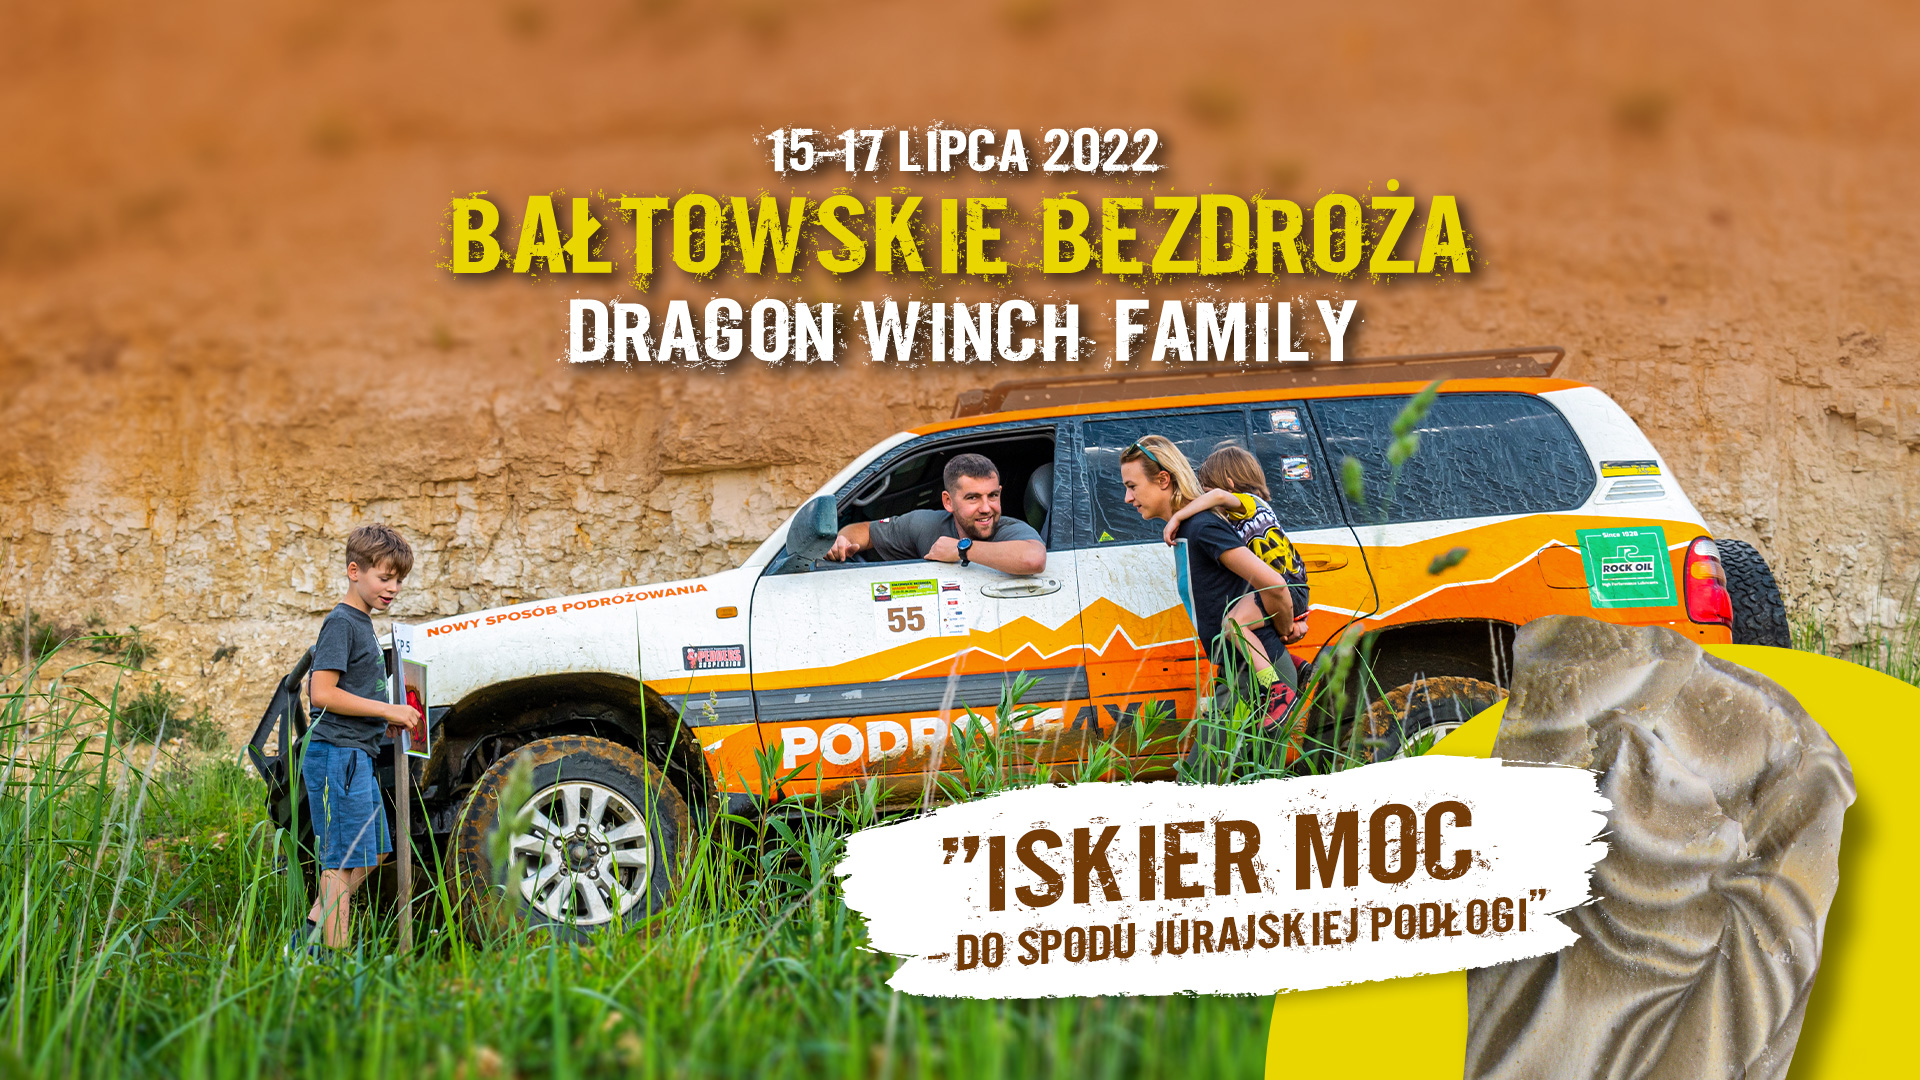 offroad-dla-rodziny-Baltowskie-Bezdroza-Dragon-Winch-Family